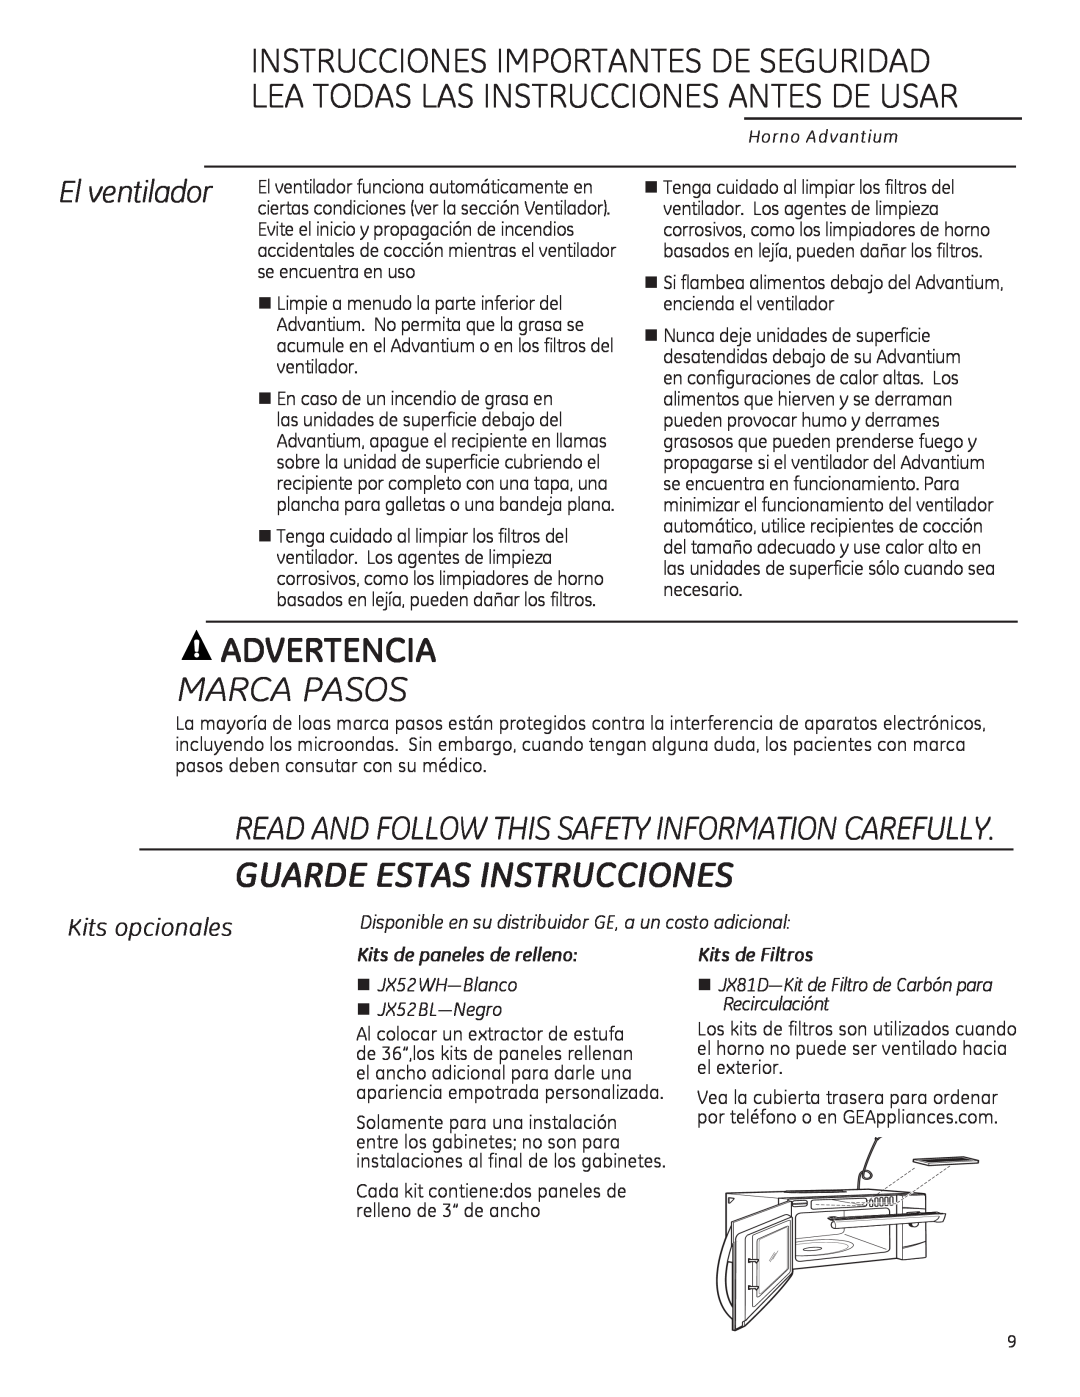 GE ZSA2201 Advertencia, Marca Pasos, El ventilador, Kits opcionales, Guarde Estas Instrucciones, Kits de Filtros 